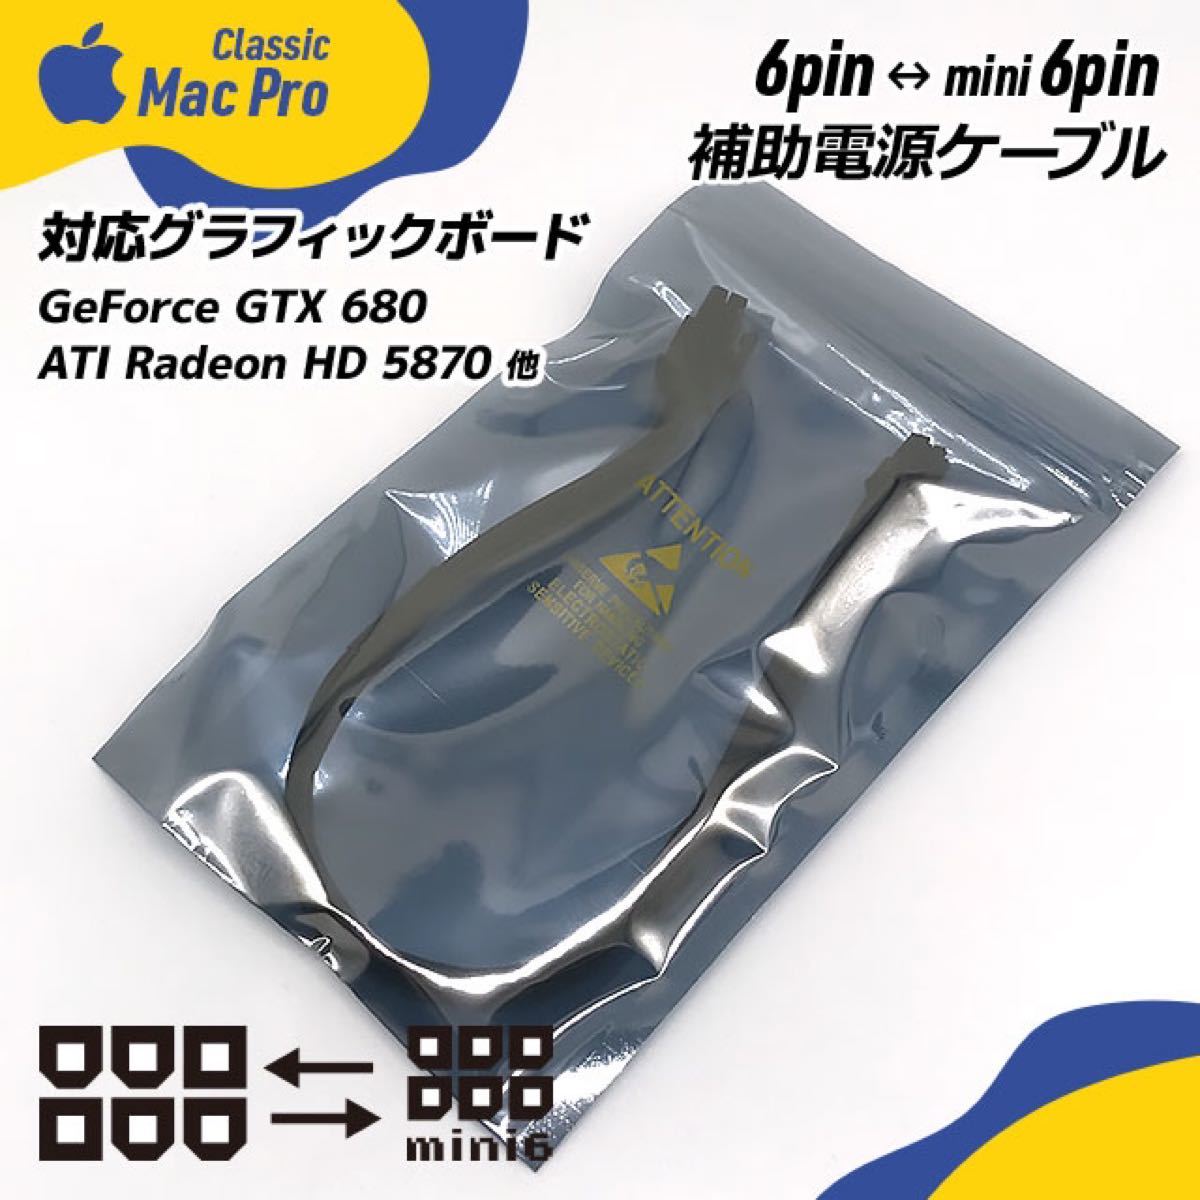 ビデオカード補助電源ケーブル 6ピン ー ミニ6ピン Mac Pro